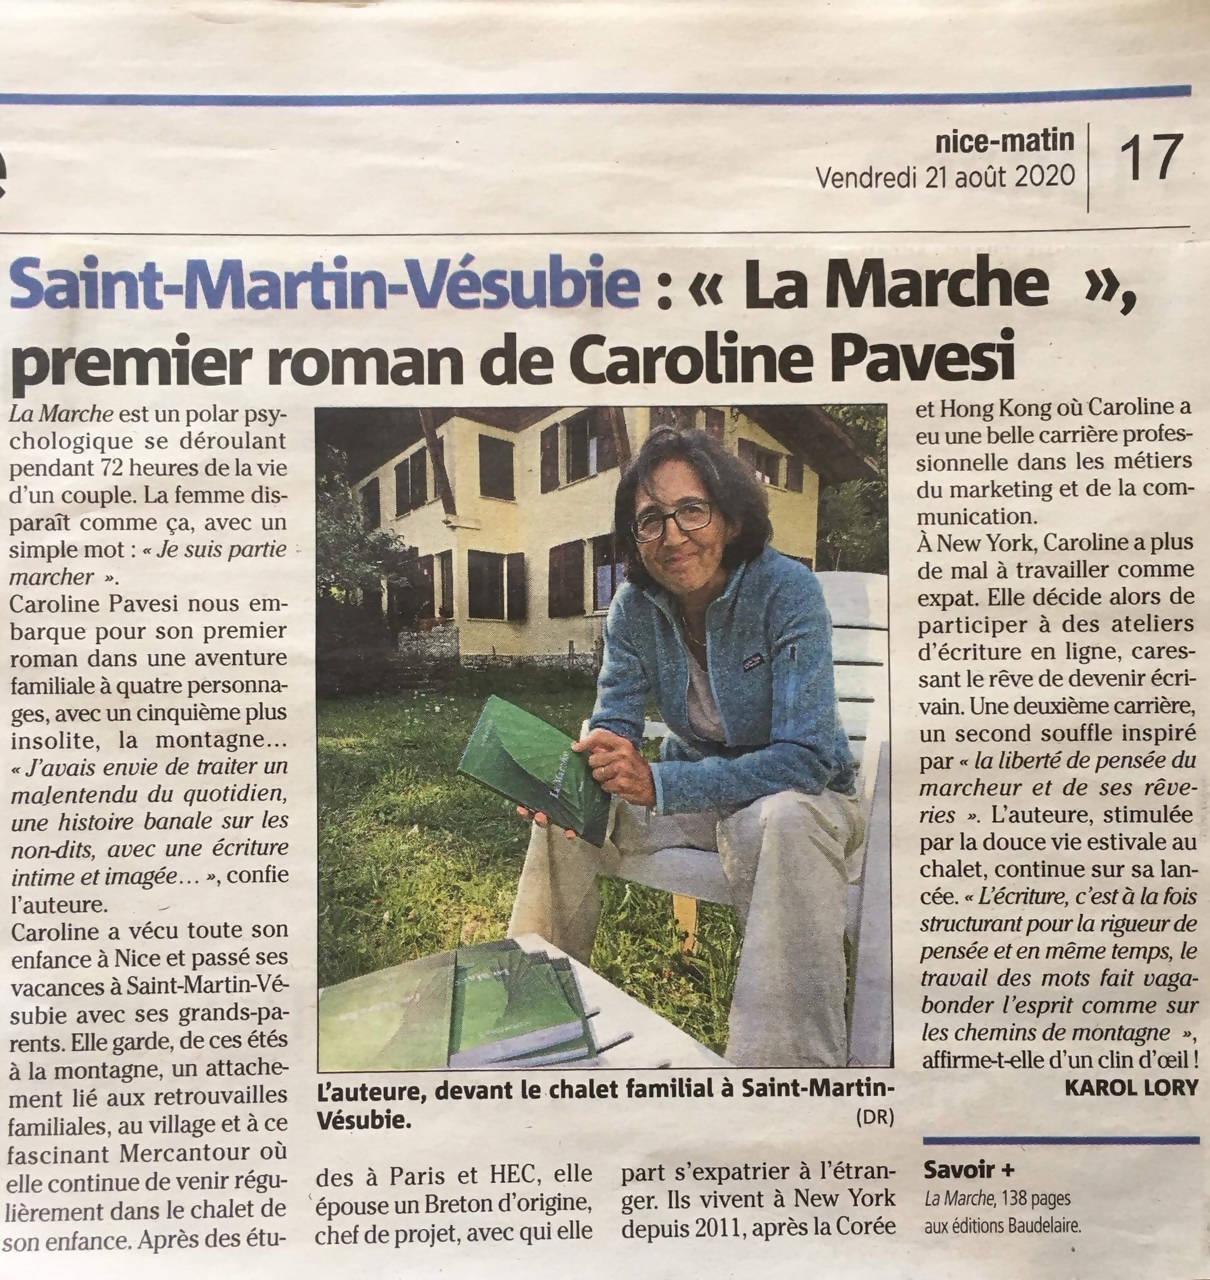 LA MARCHE - Caroline Pavesi